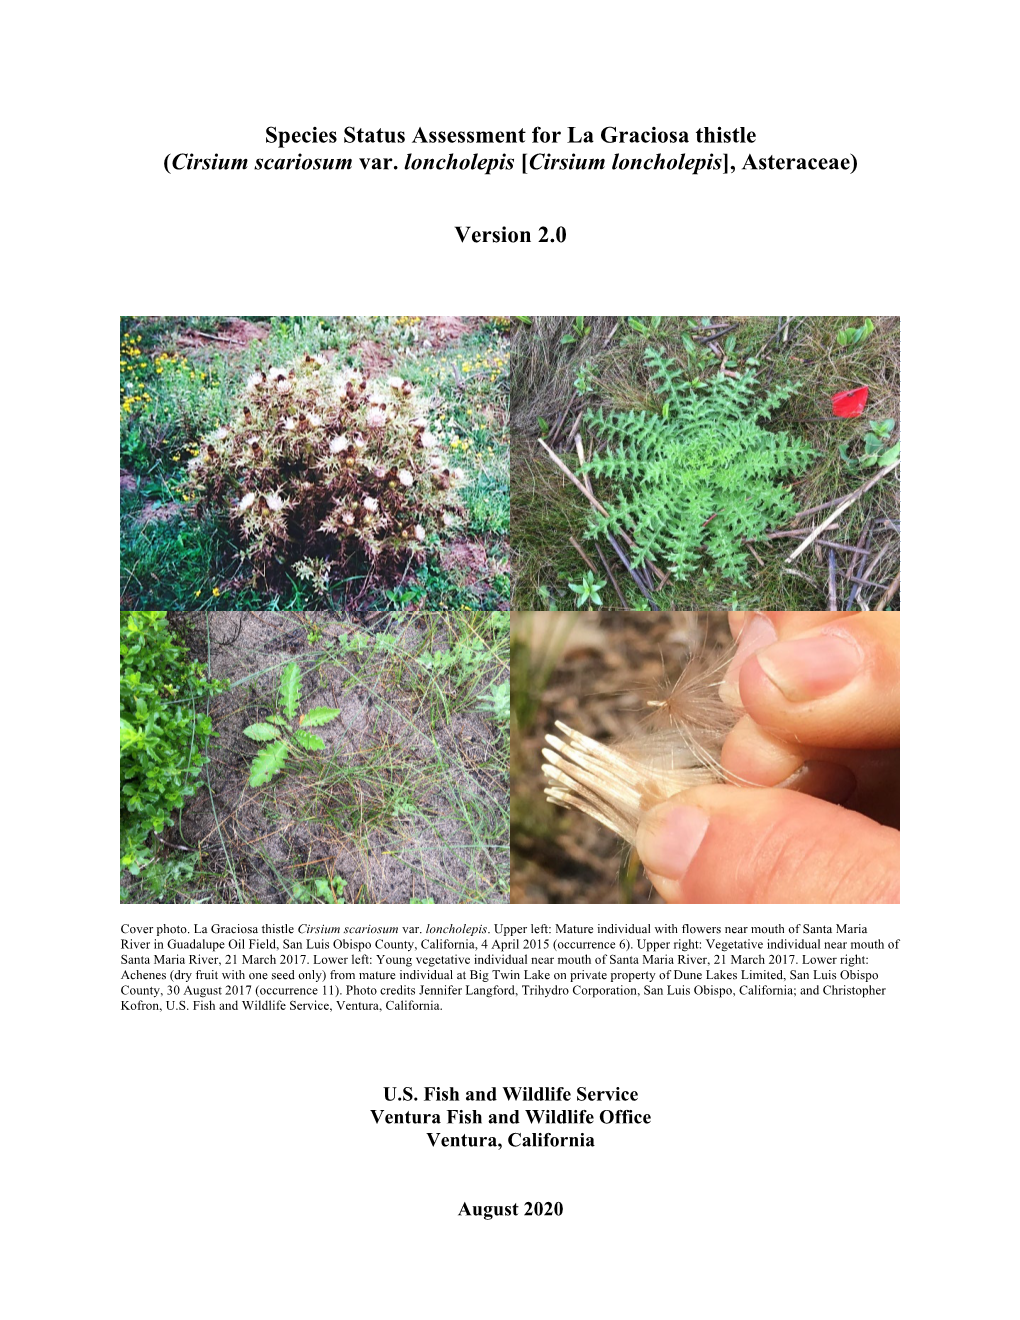 Species Status Assessment for La Graciosa Thistle (Cirsium Scariosum Var